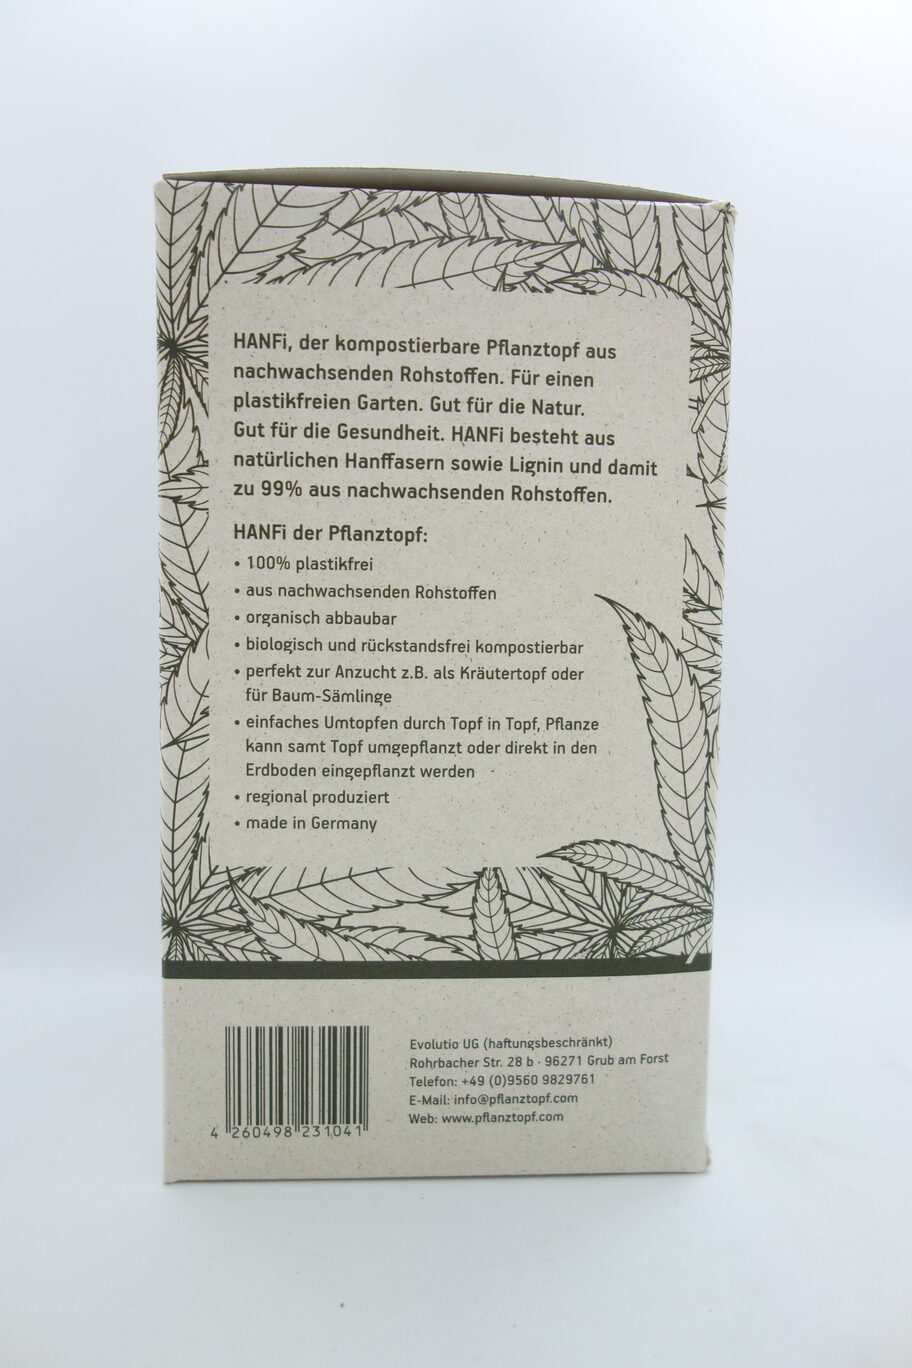 Karton von der Seite mit Infos zum Hanf-Pflanztopf